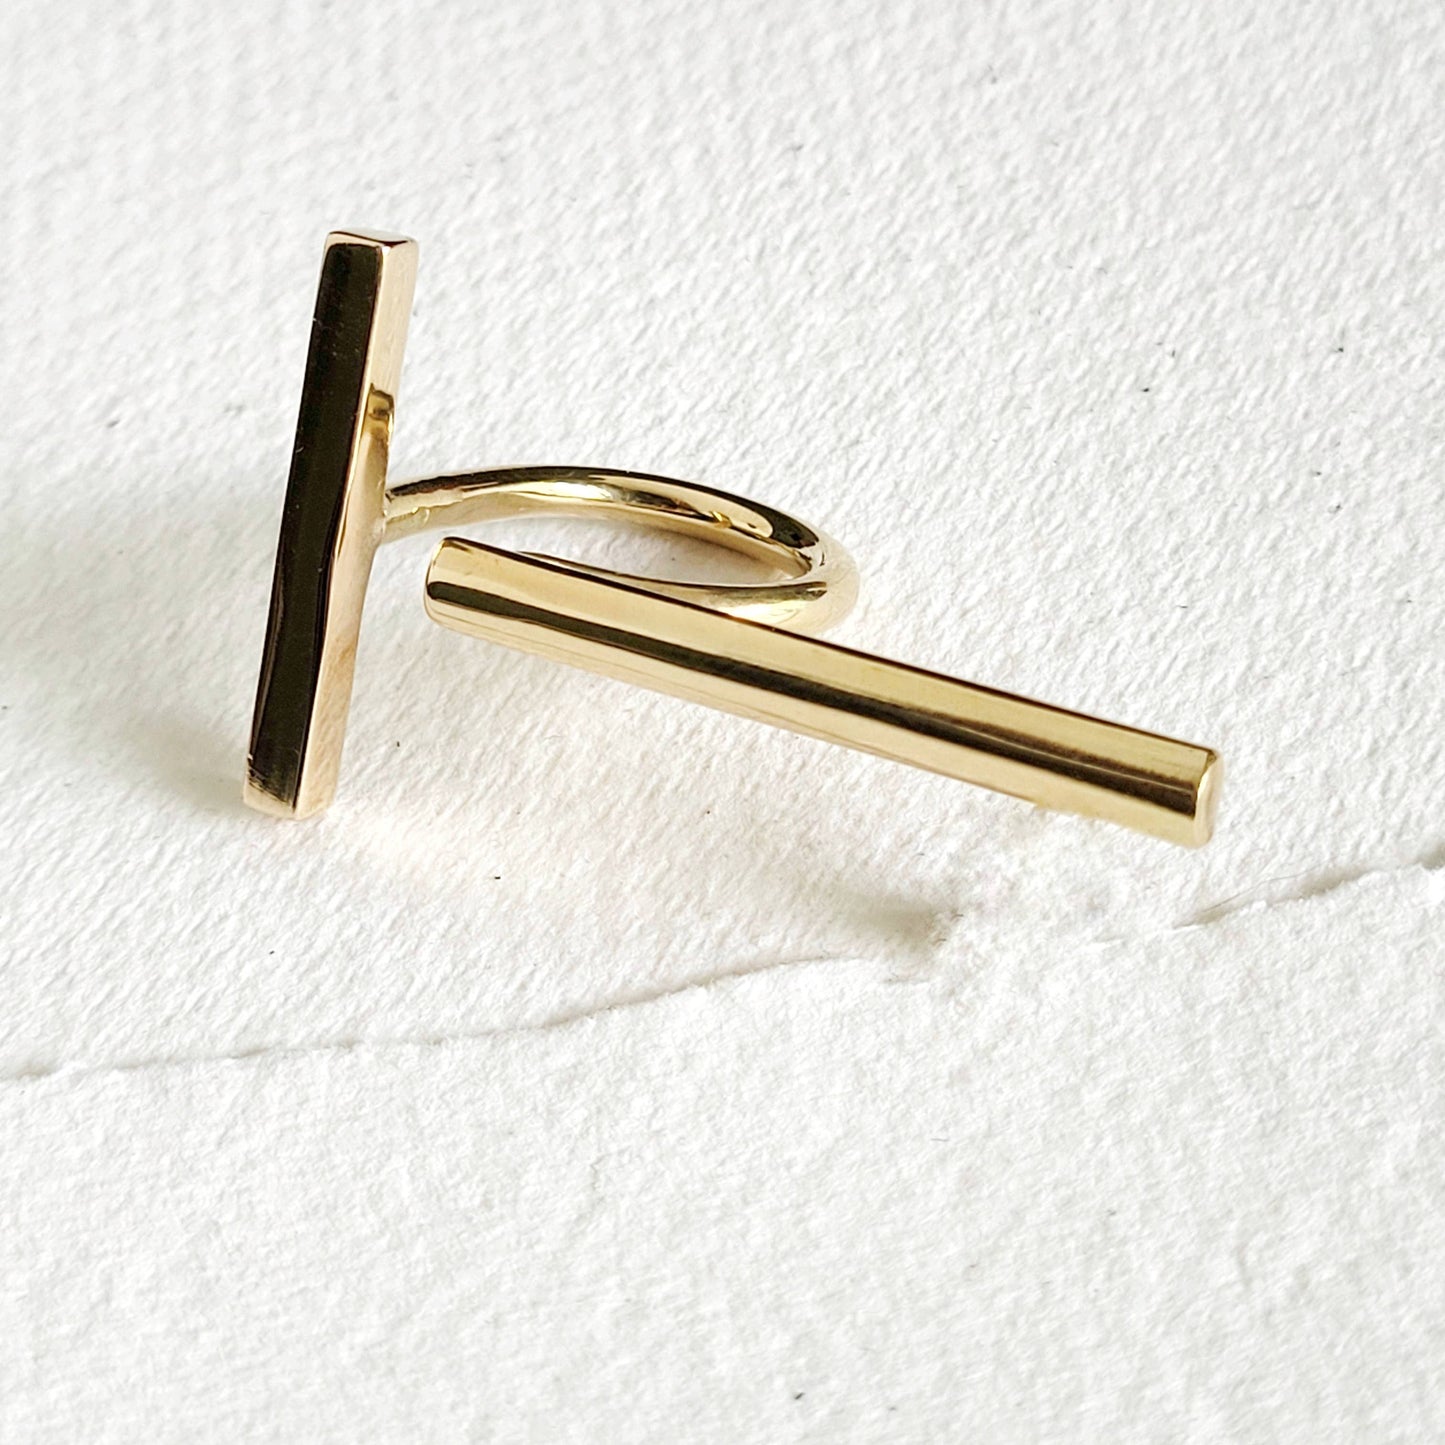 Bisjoux - Brass bold designer double bar ring handcrafted Bisjoux